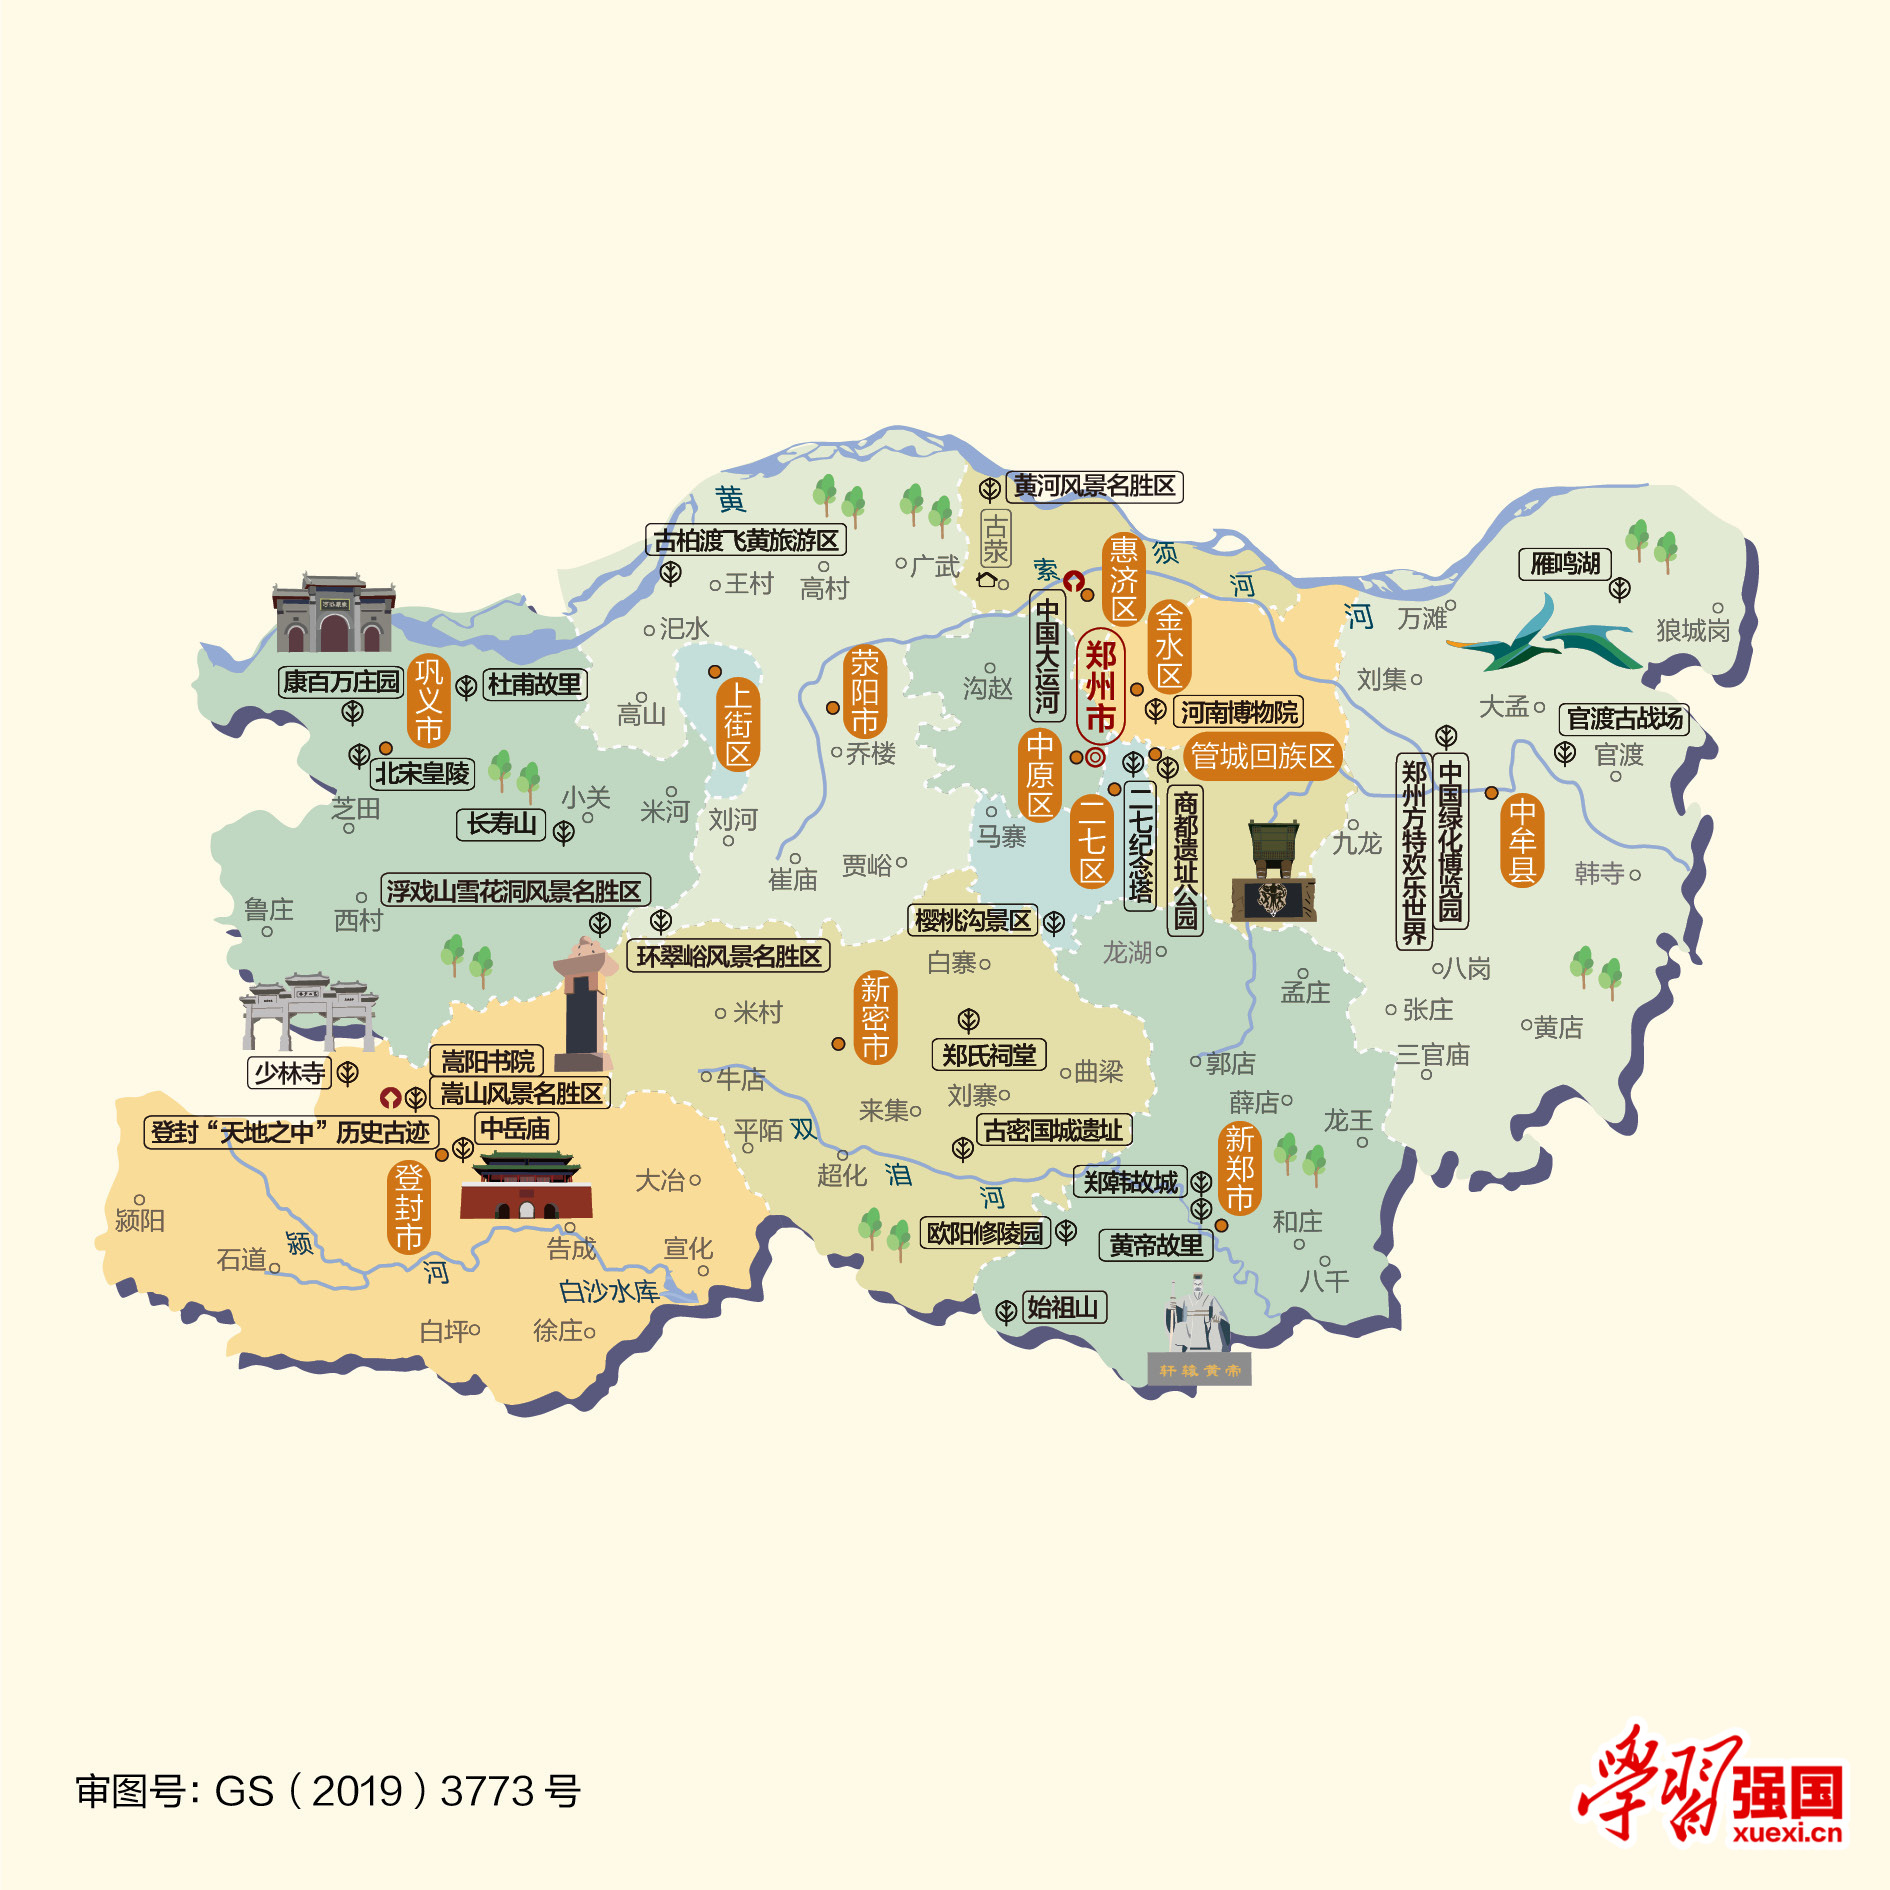 郑州市地图高清版|郑州市地图高清版全图高清版大图片|旅途风景图片网|www.visacits.com